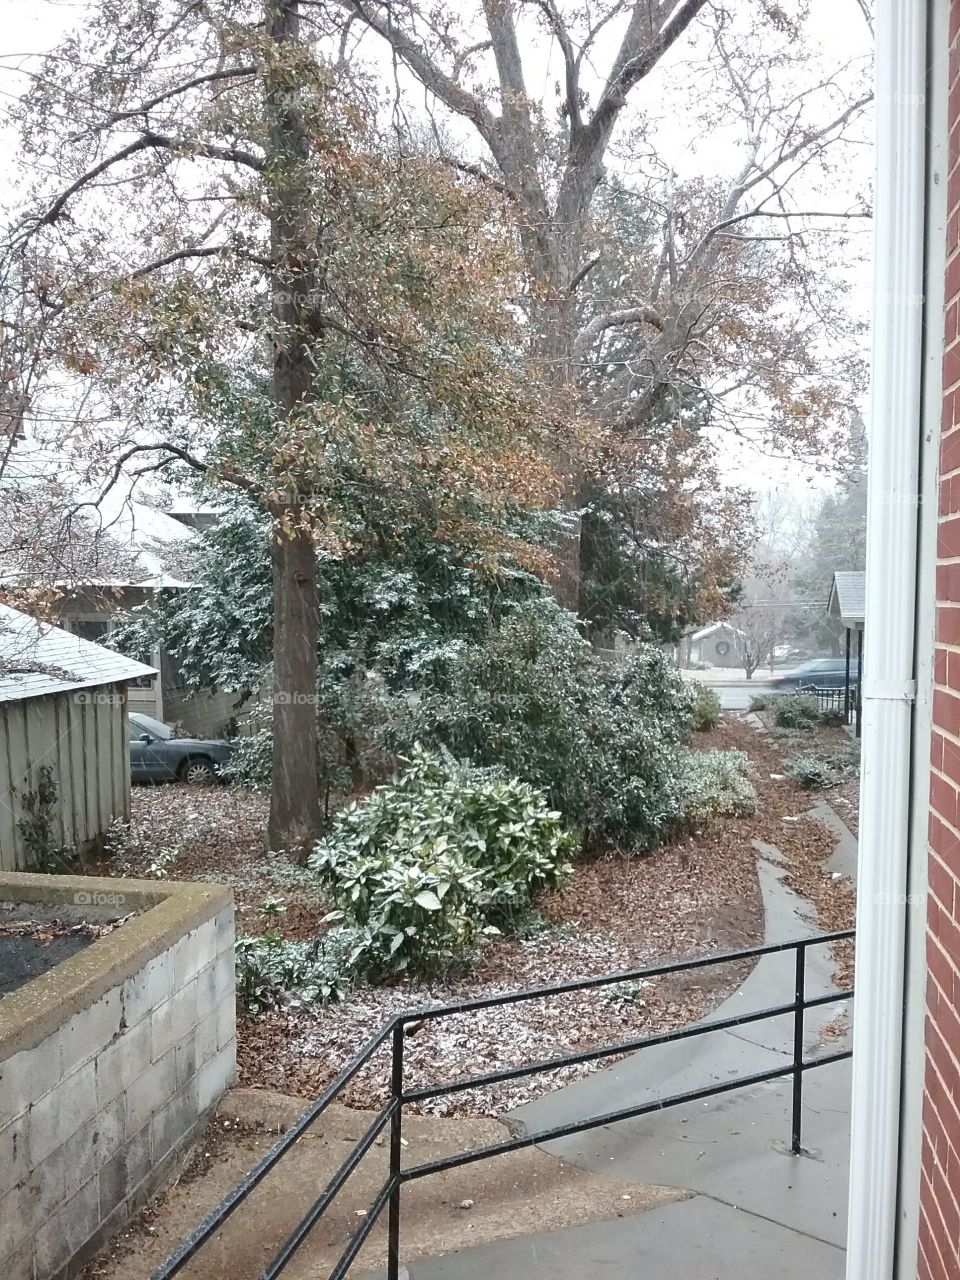 Snowing in Huntersville, AL.